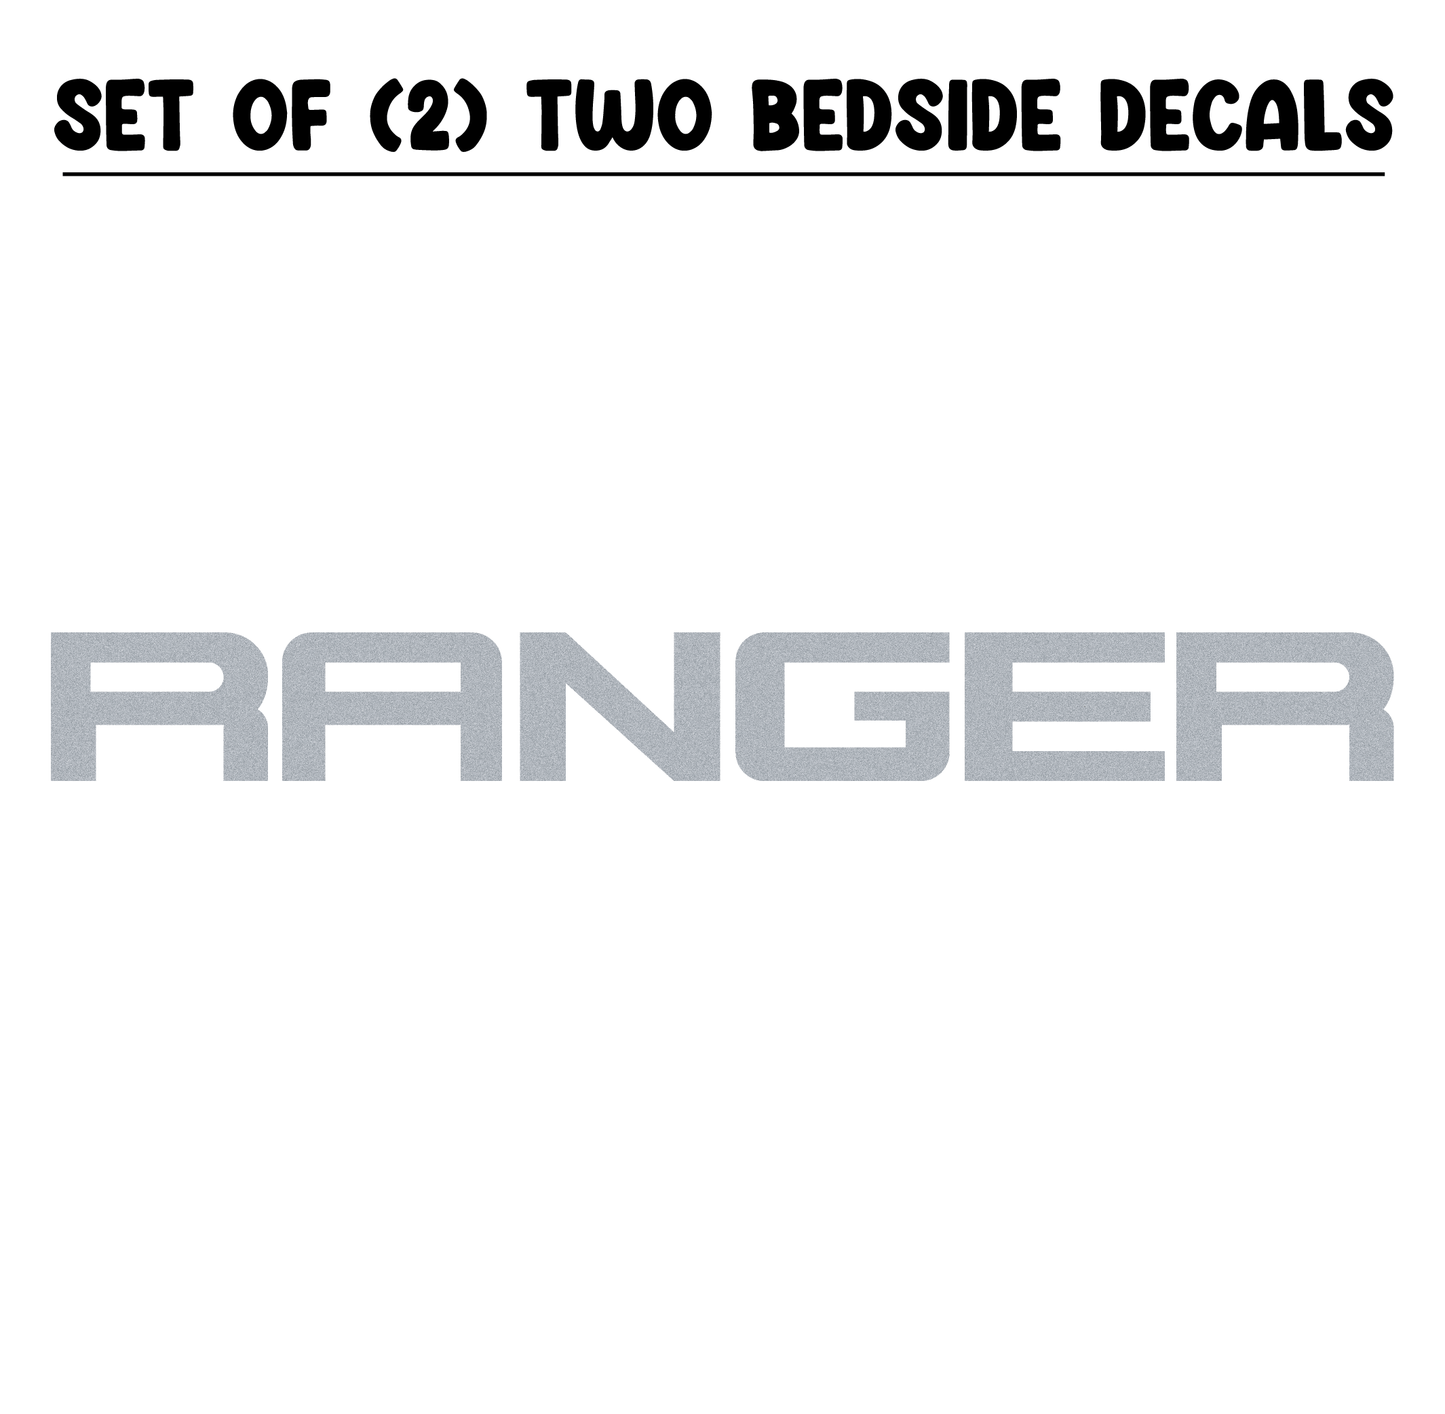 Shop Vinyl Design Ranger Trucks Replacement Bedside Decals #002 Vehicle decal 001 Silver Metallic Shop Vinyl Design decals stickers